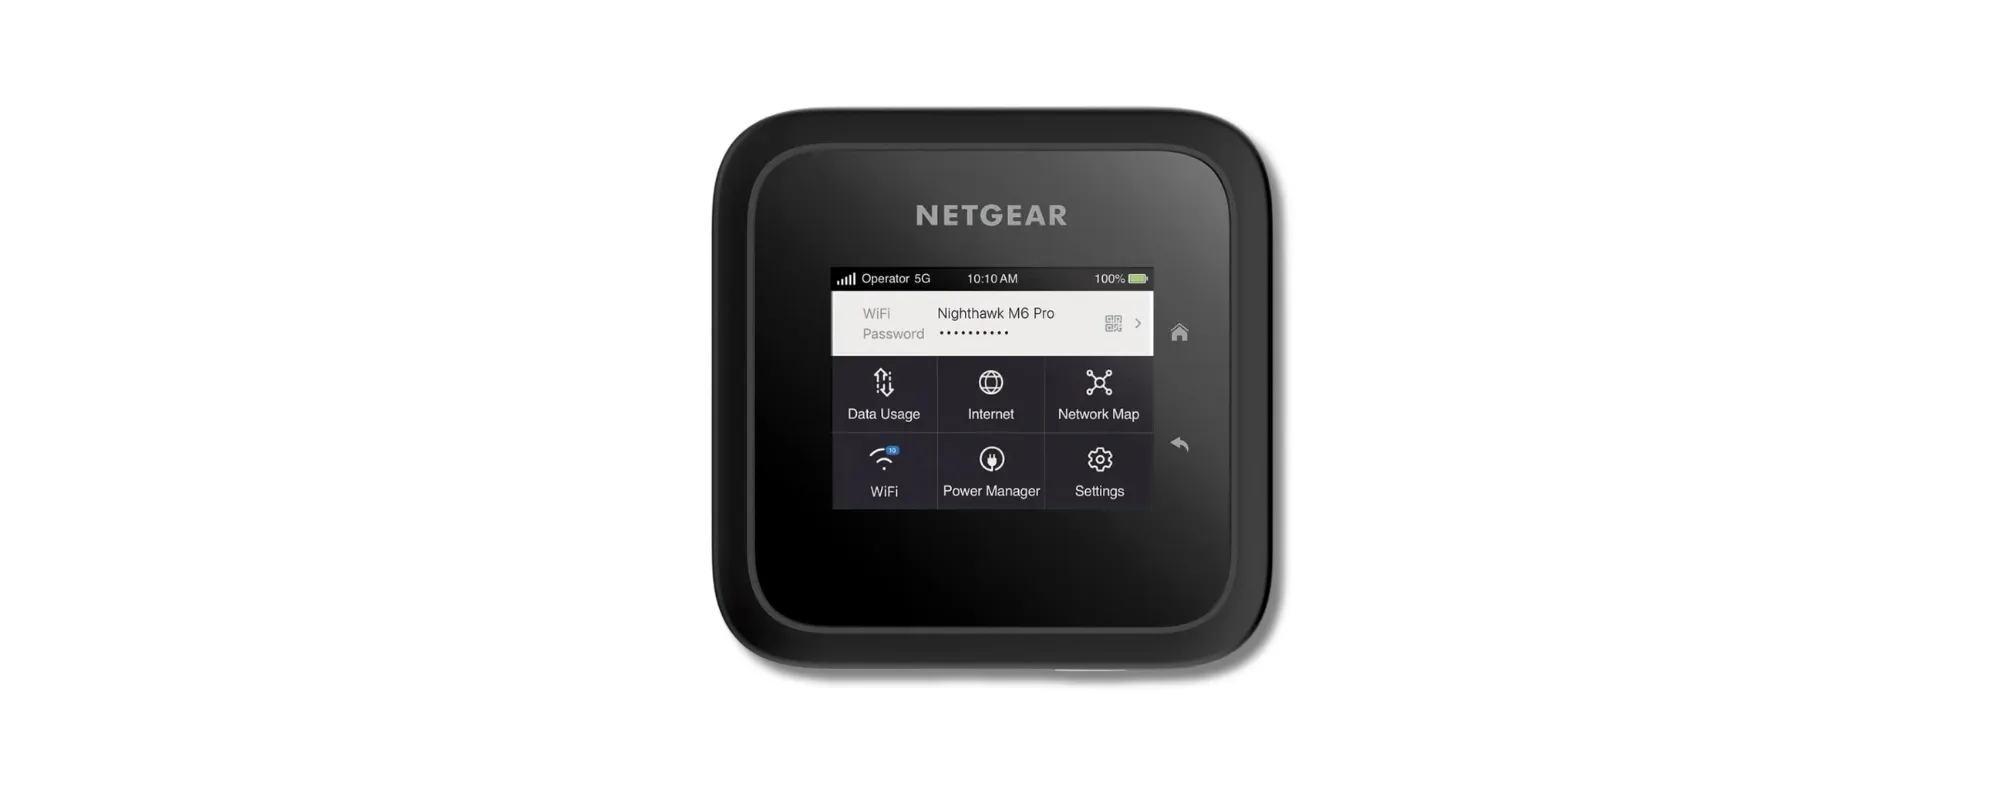 NETGEAR Nighhawk M6 Pro 5G mobile hotspot